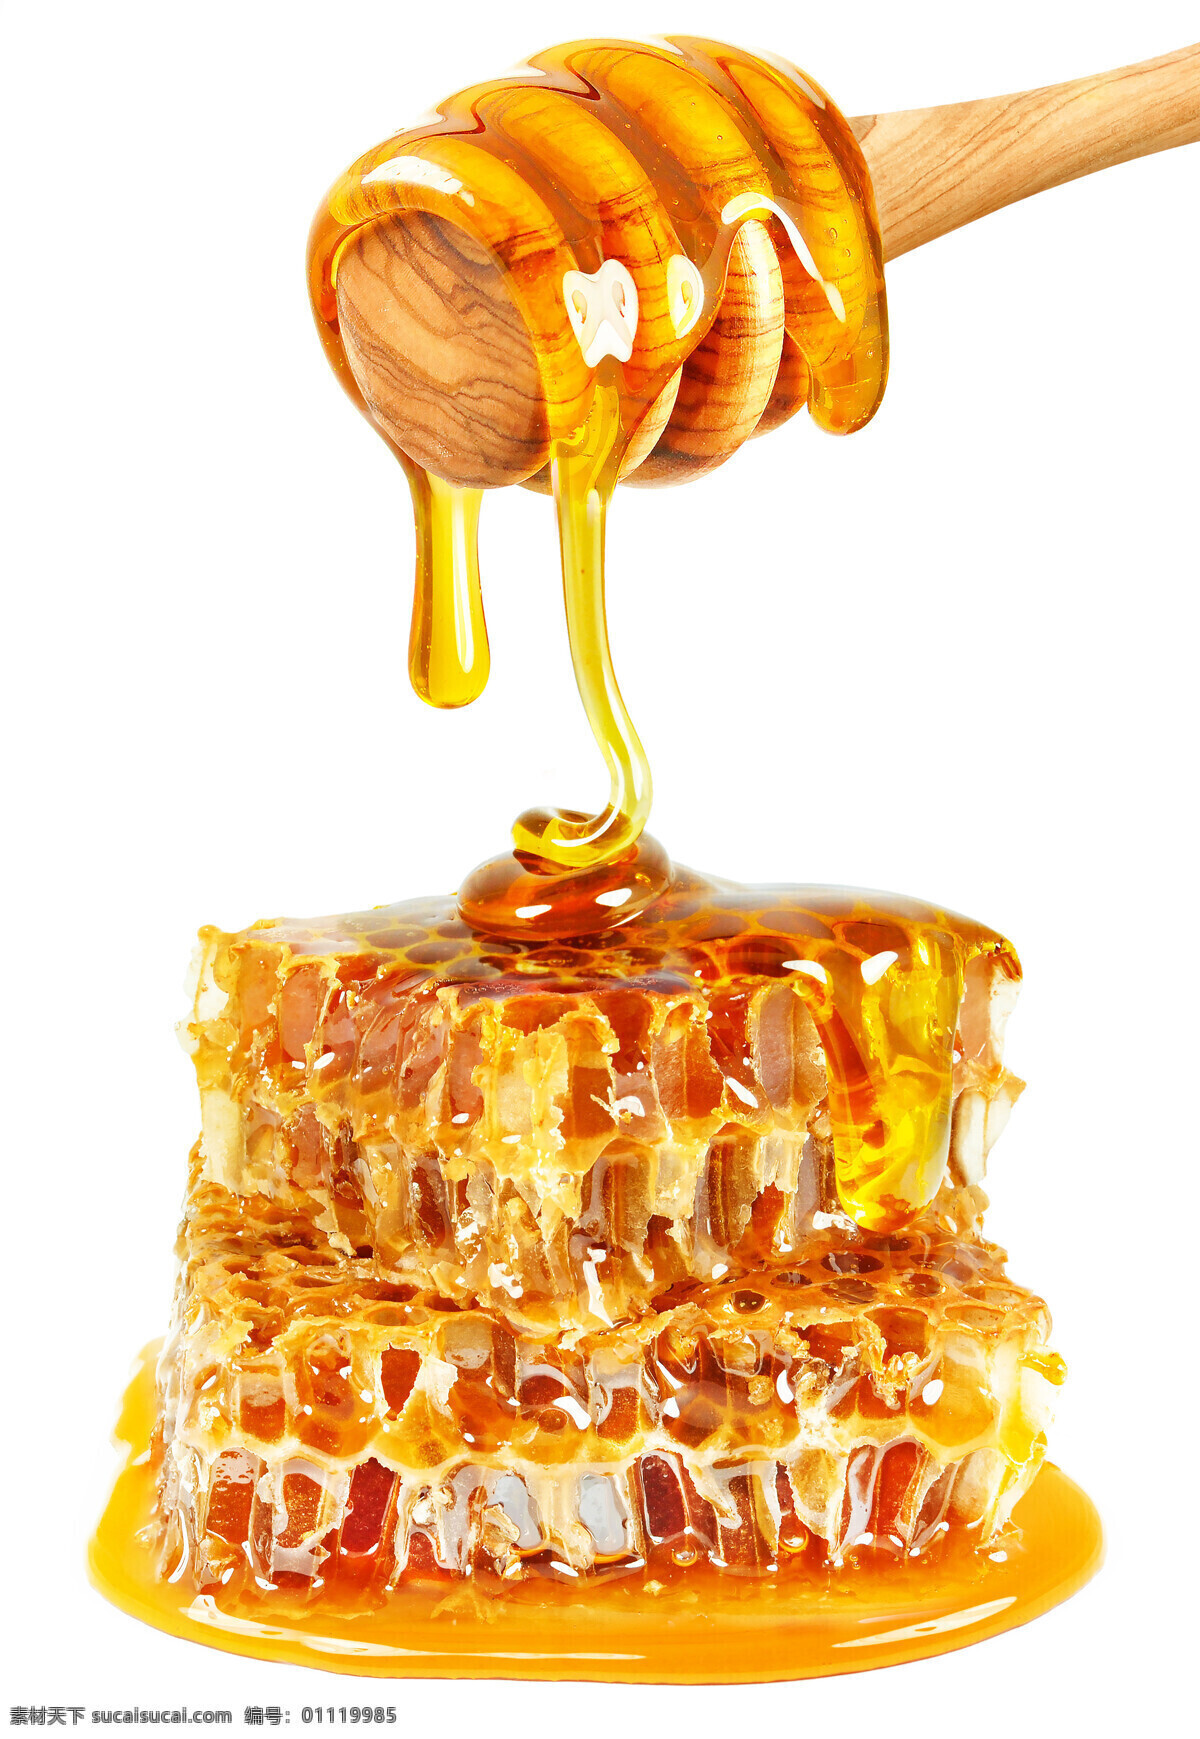 蜂蜜 蜂王浆 甜品 食物 美食 饮料 饮品 蜜蜂 蜜糖 餐饮美食 传统美食